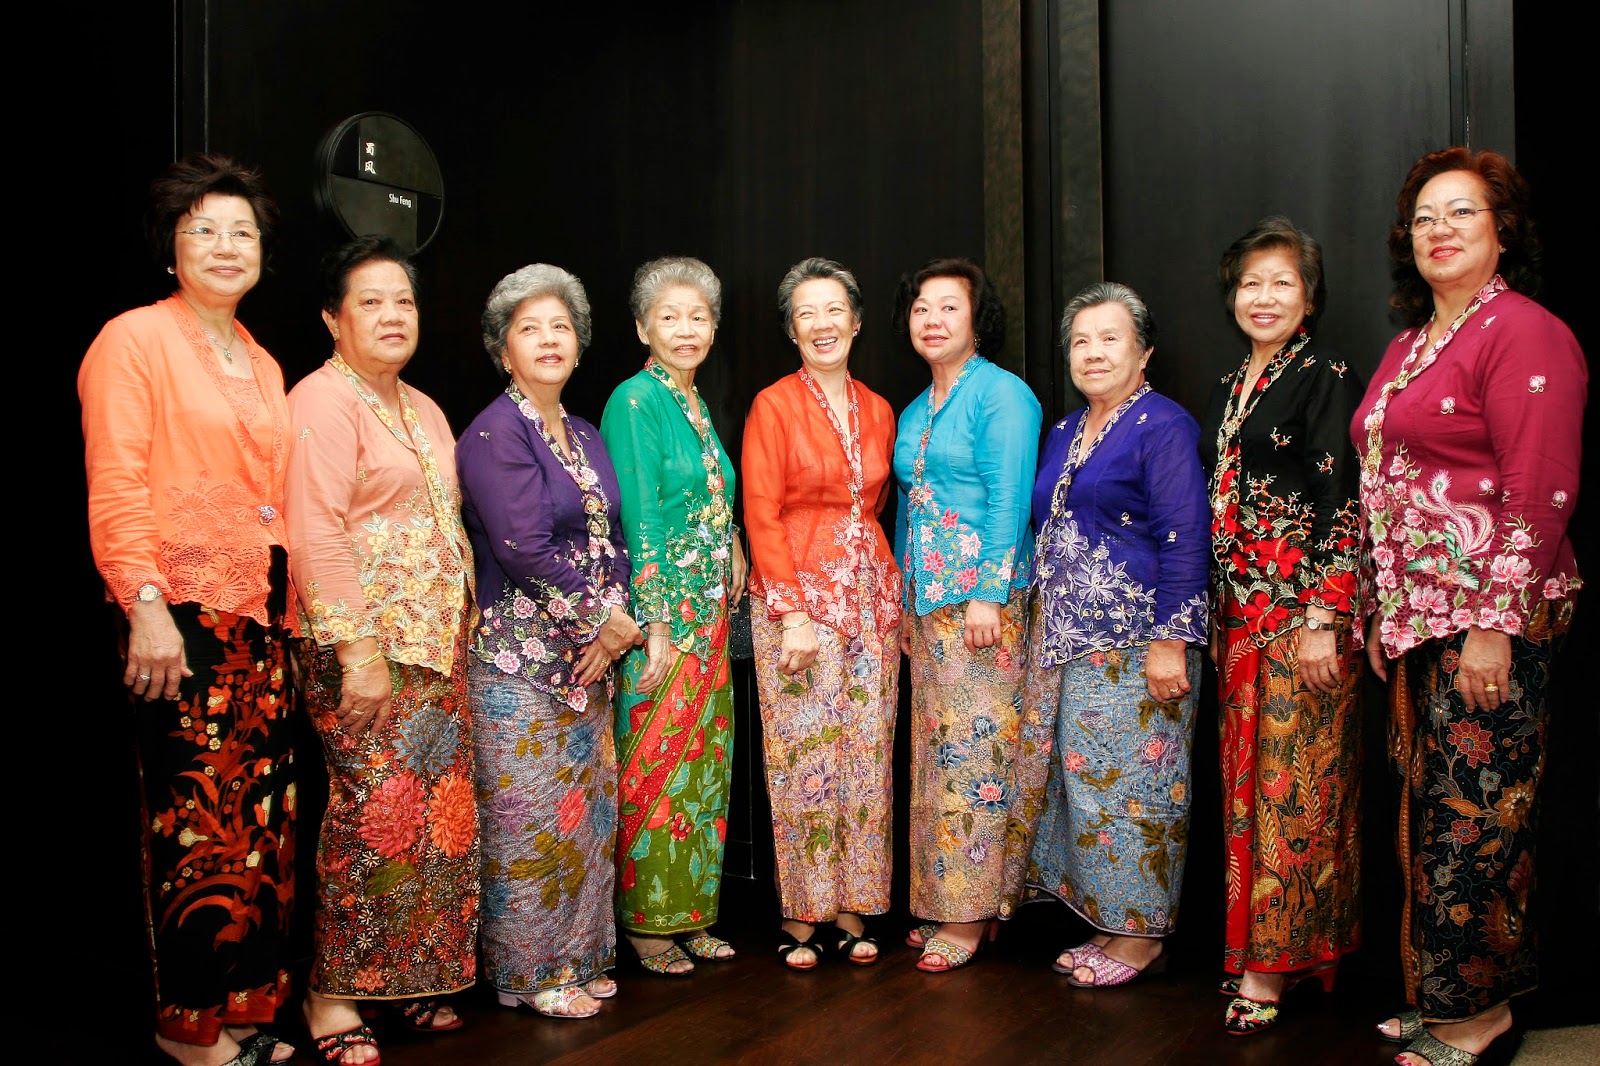 1 World Sarongs - "The Sarong Source Blog": cotton sarong